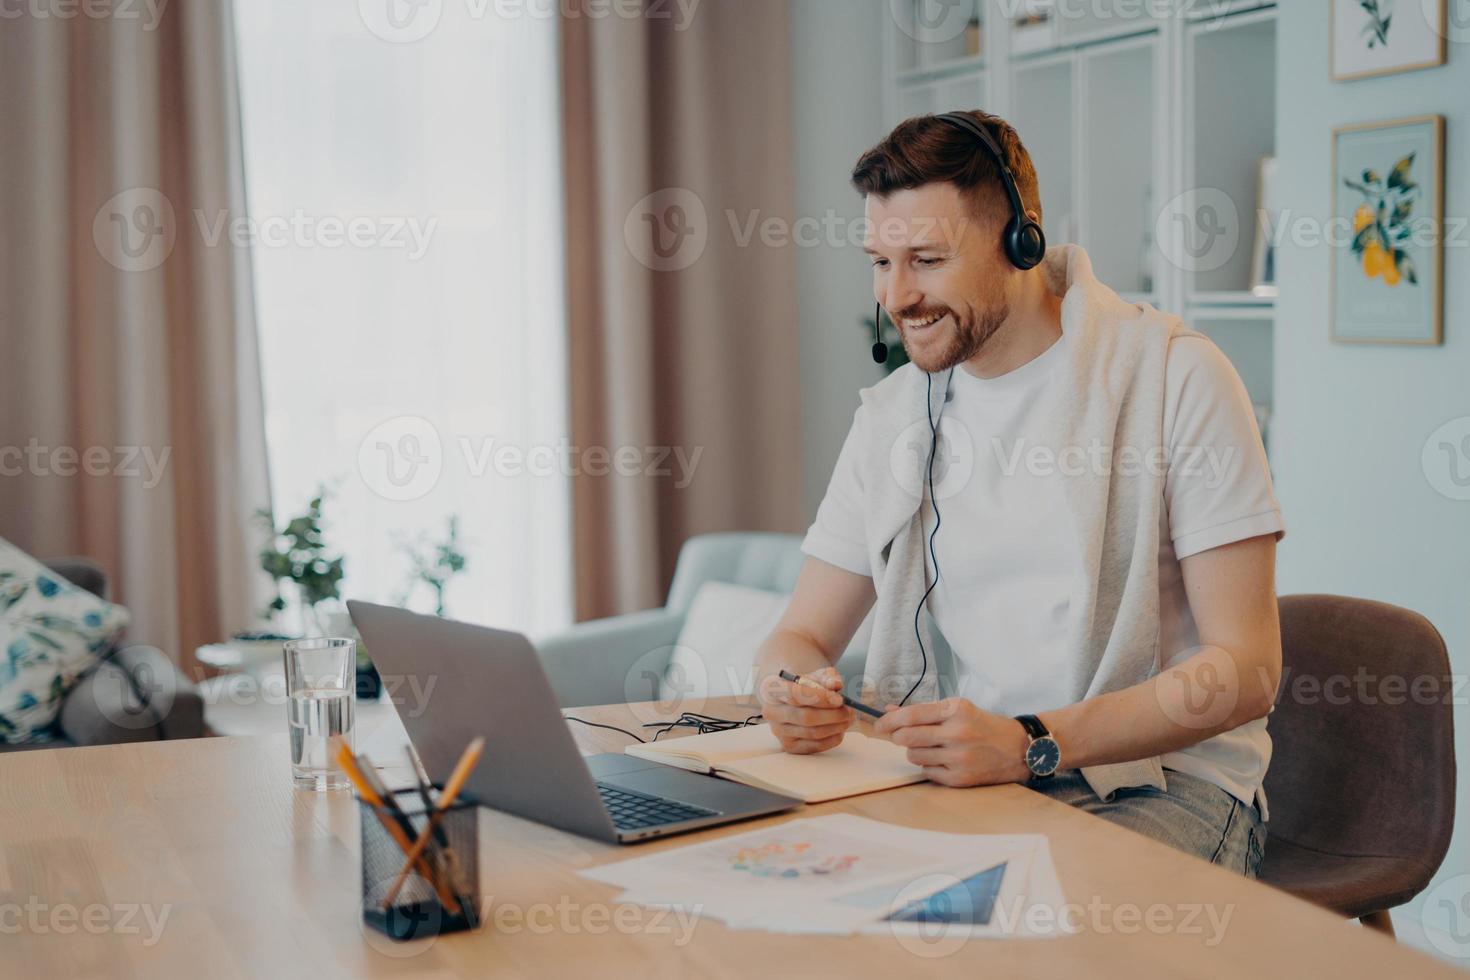 jovem macho sorridente no fone de ouvido estudando em casa durante a quarentena foto